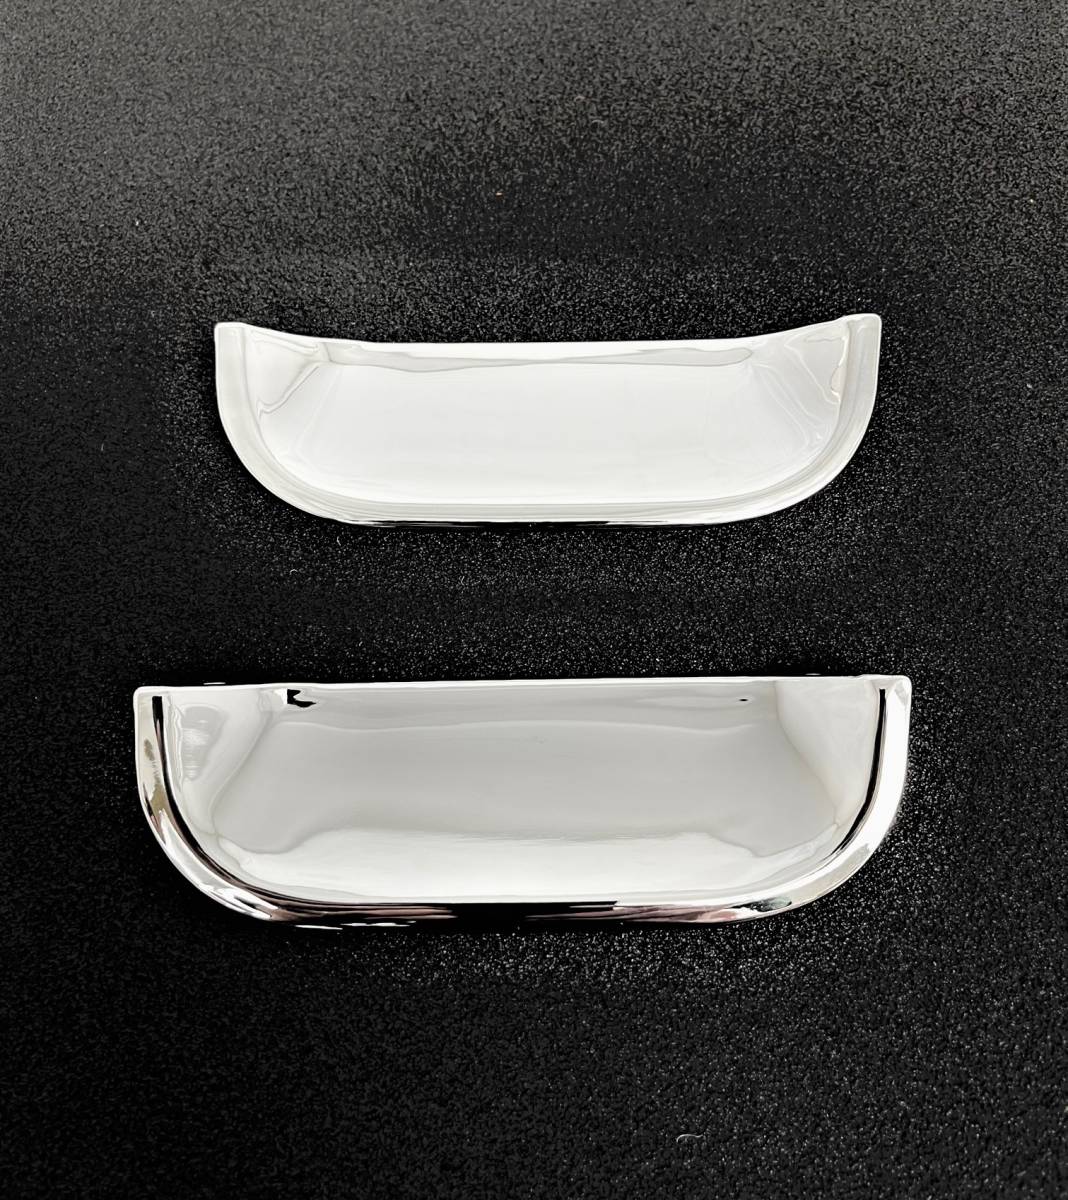  зеркальная полировка! металлизированный накладка ручки двери Chevrolet MW ME63S ME64S ME34S S выпуск 1.3S S V/G selection отделка тарелка 